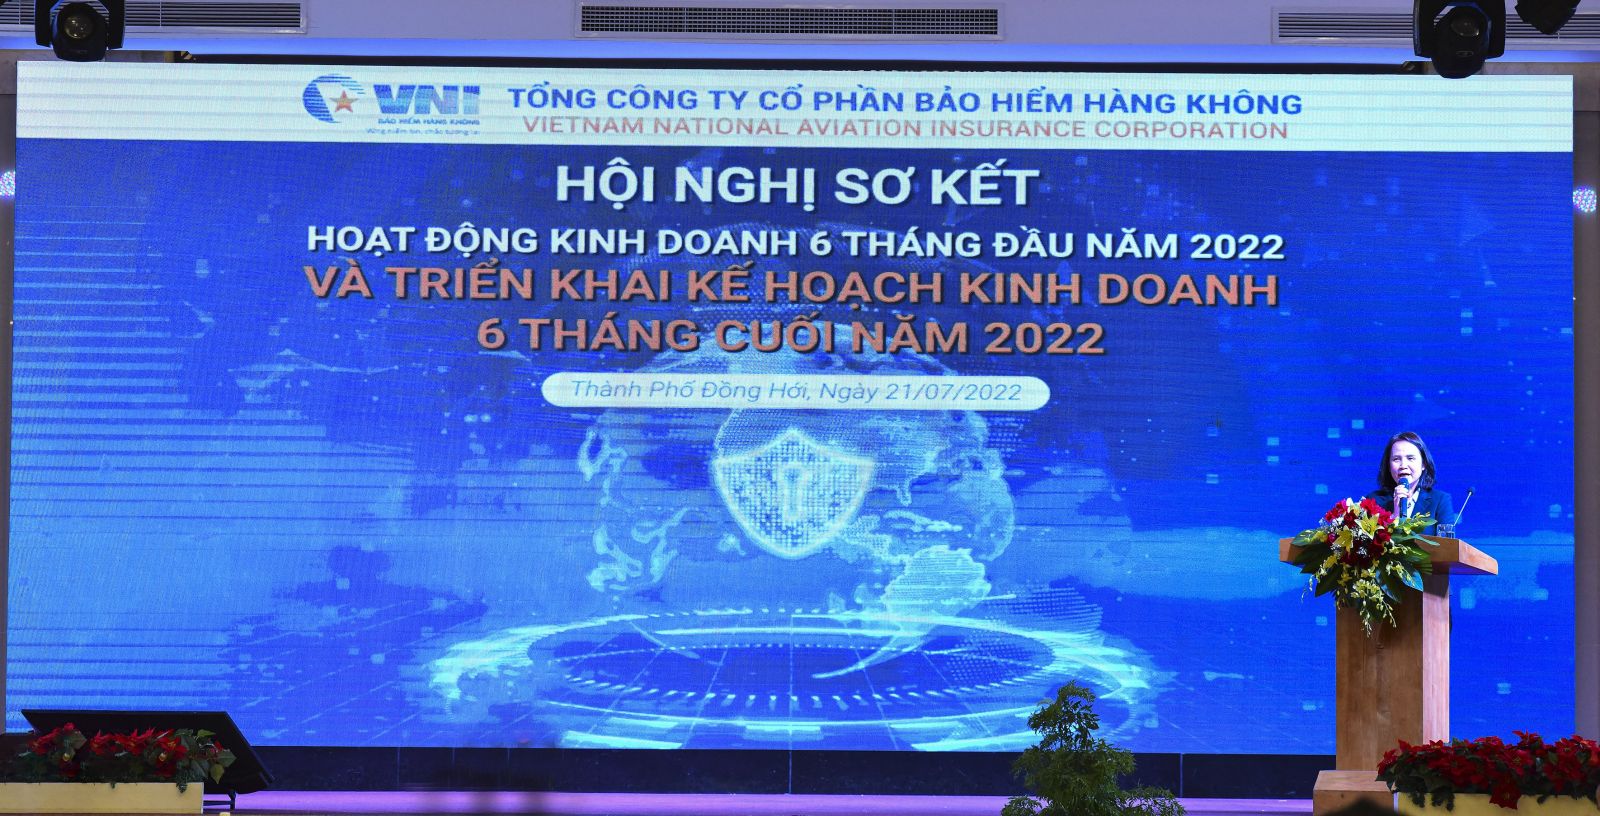 Chủ tịch HĐQT Lê Thị Hà Thanh